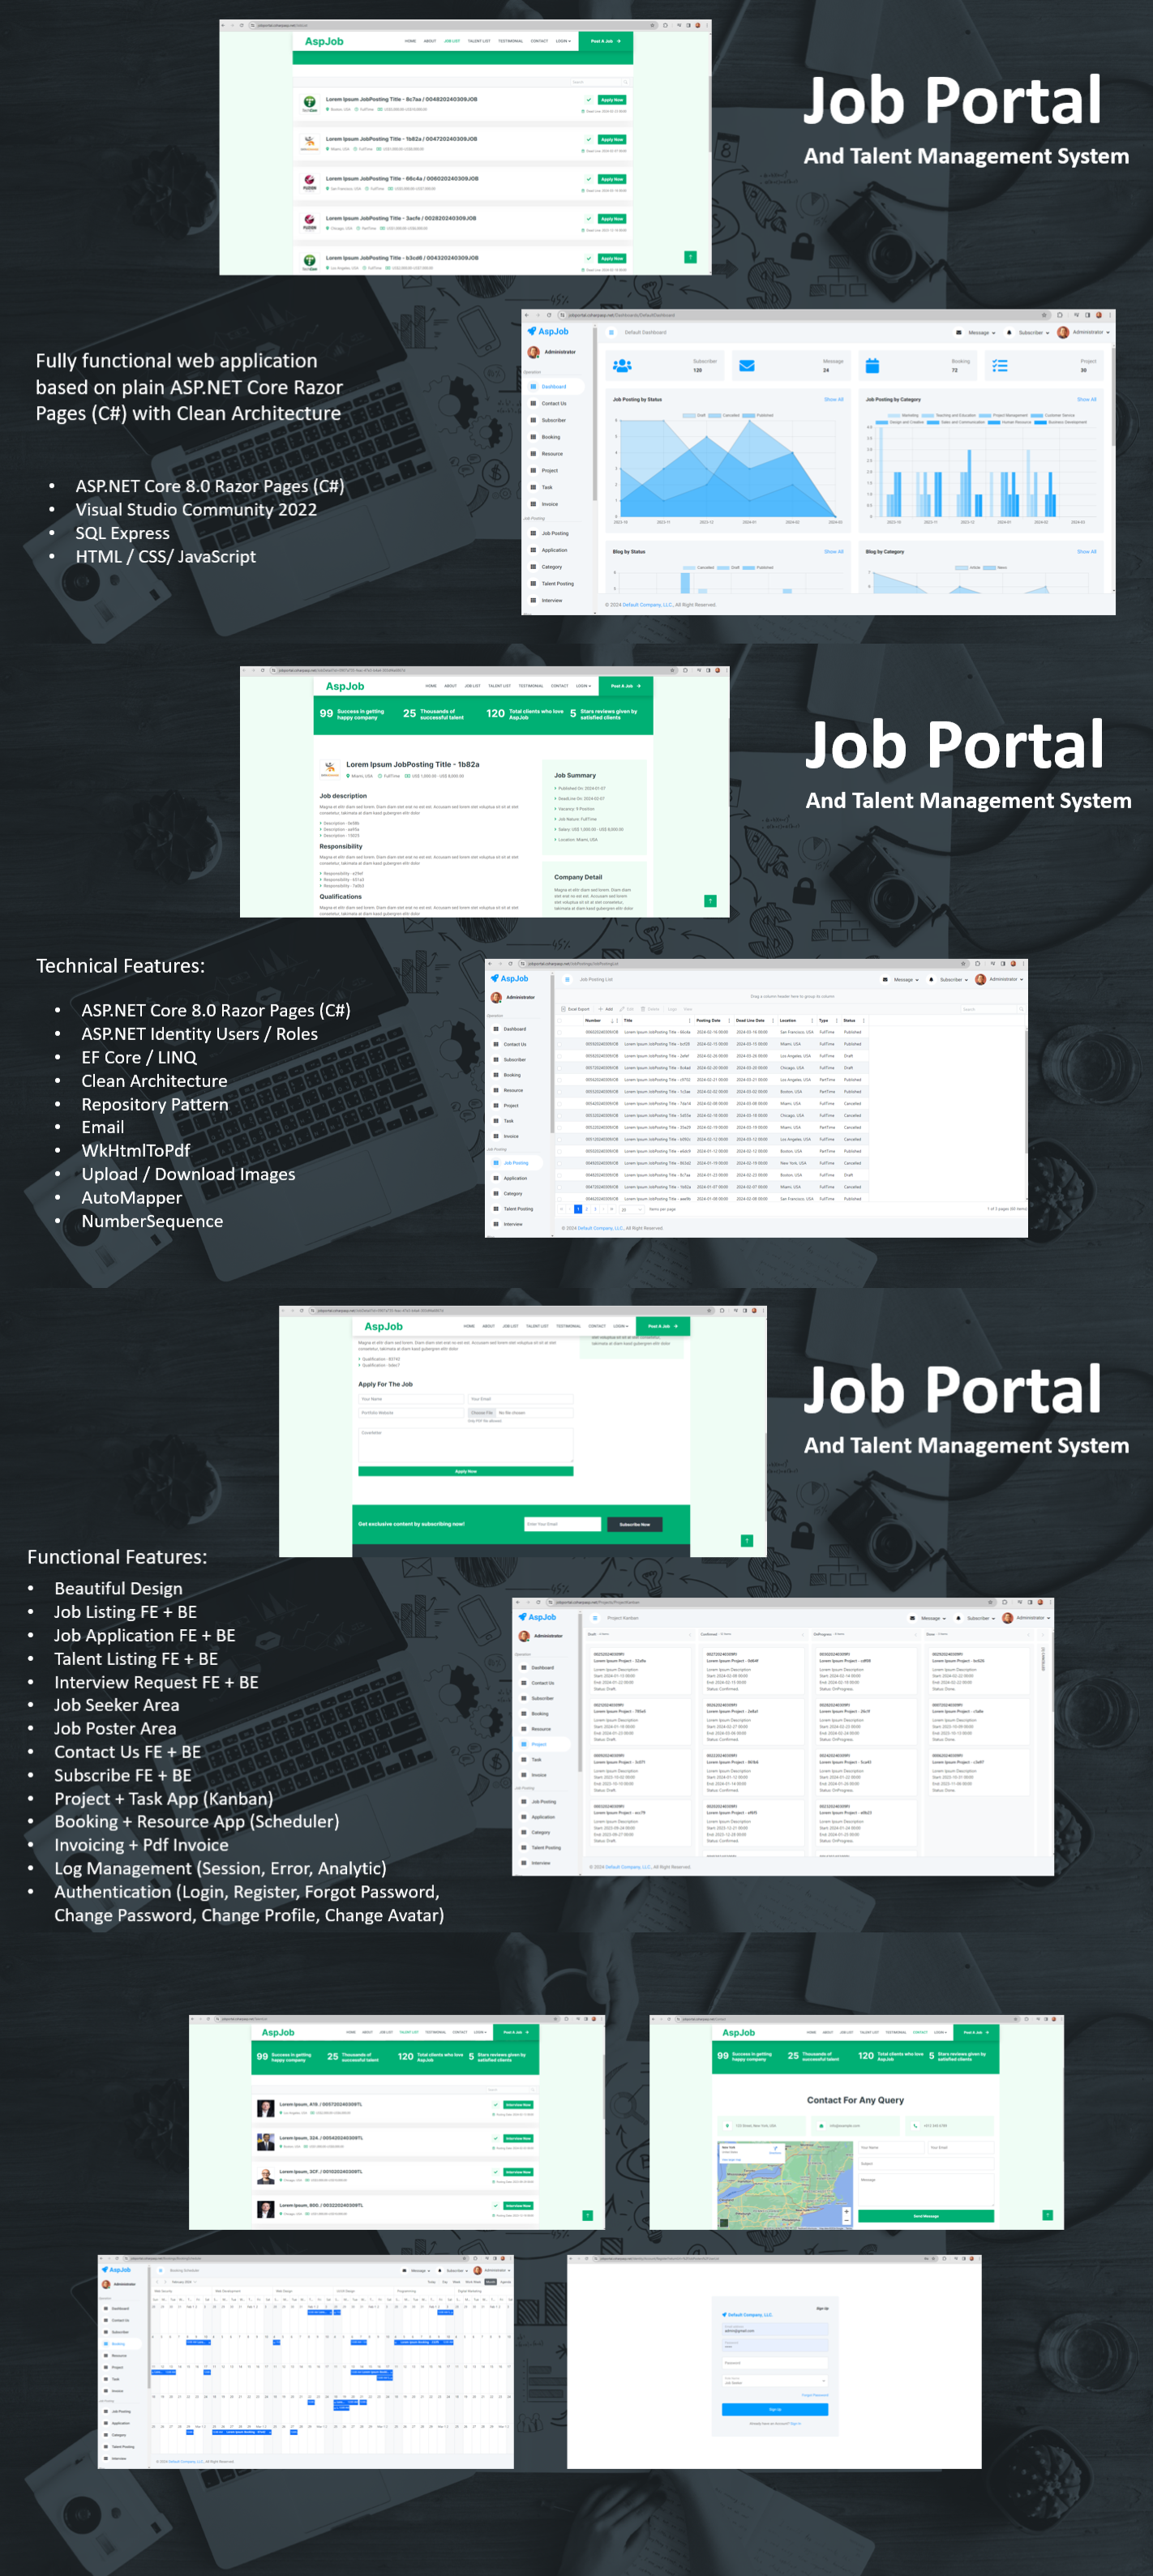 Job Portal Talent Management System - ASP.NET Core 8.0 Razor Pages (C#) - 1